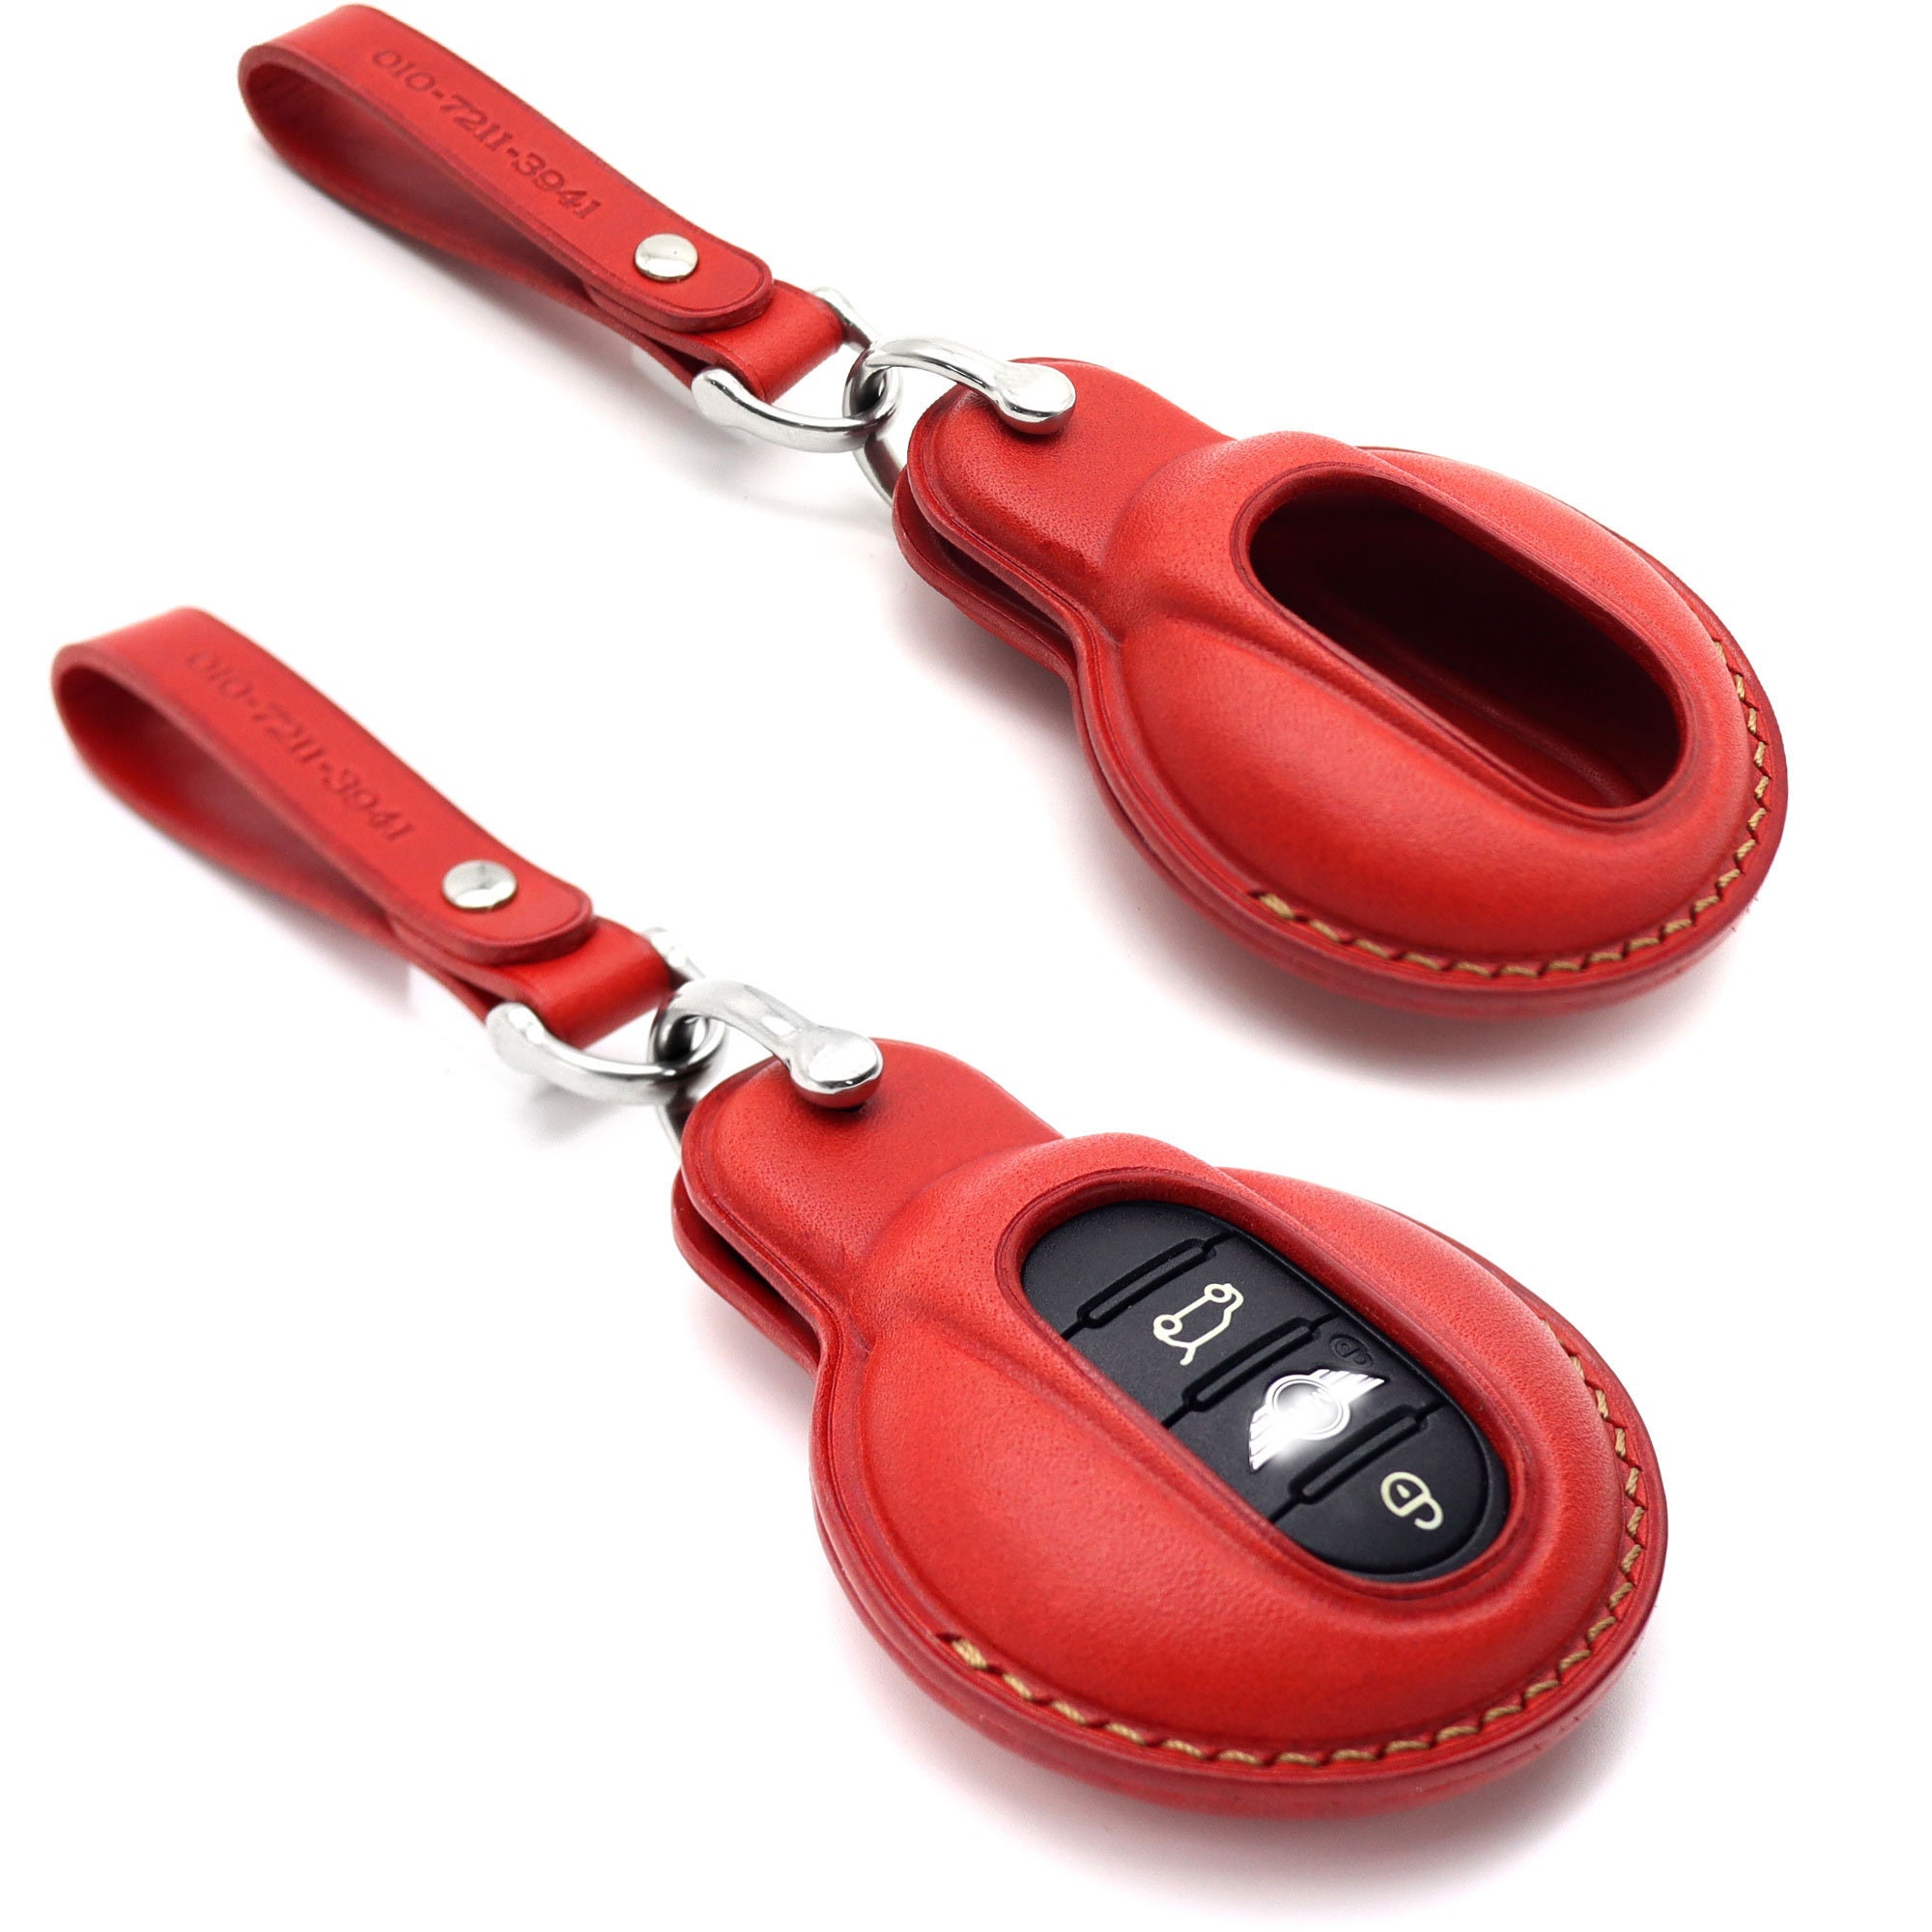 Mini Cooper Schlüsselanhänger, Leder Autoschlüssel Fob Abdeckung,  Fernschlüssel Fall, Autoschlüssel Fall, Smart-Key Lederfall - .de